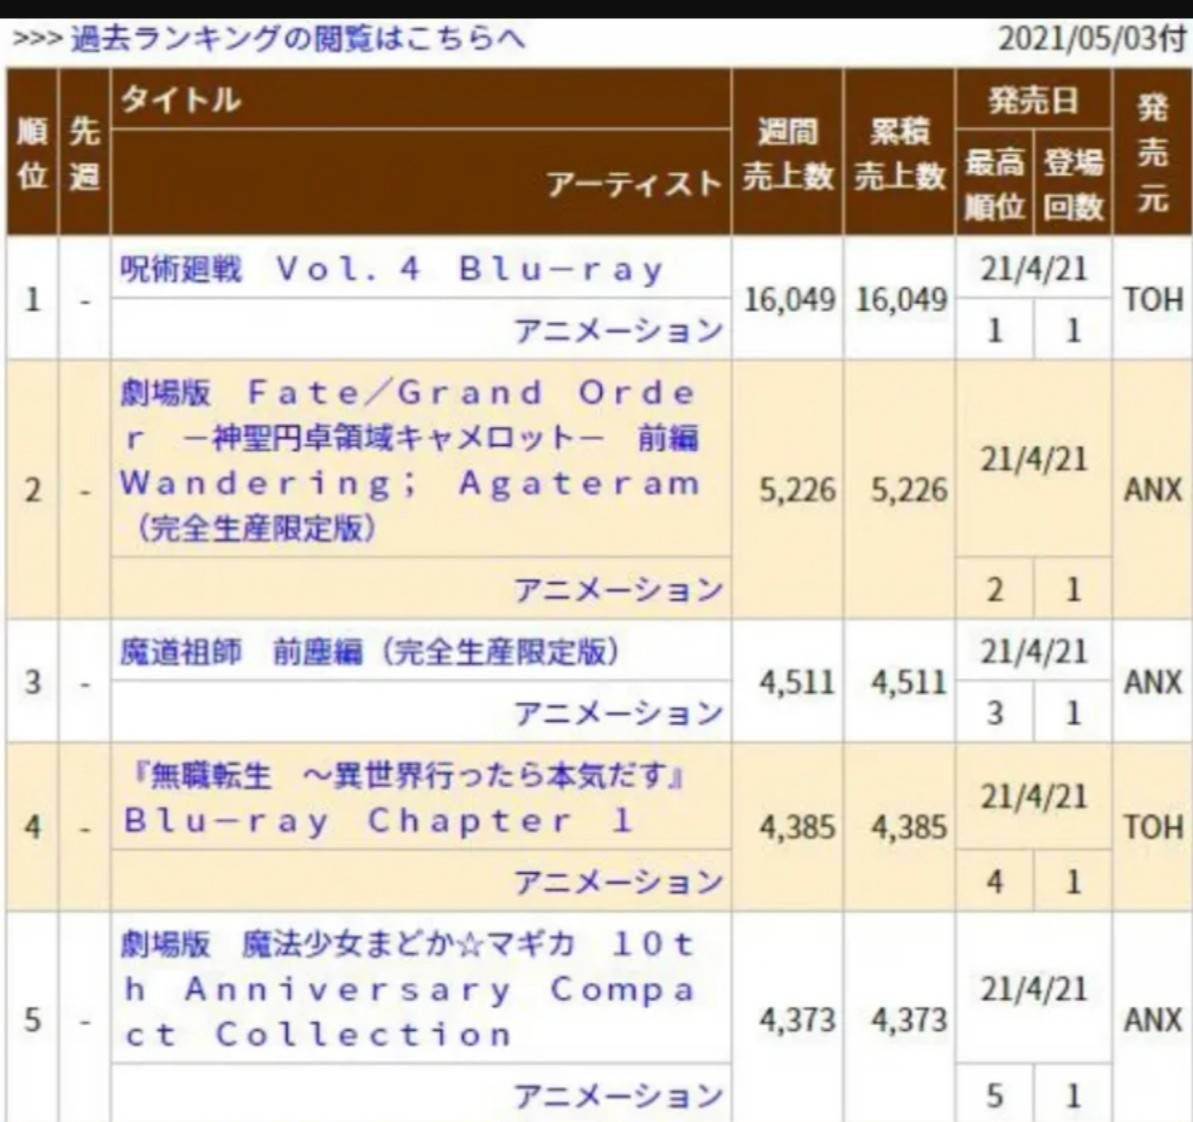 国漫崛起还得靠2d 魔道祖师 光盘销量在日本排行第三 罗小黑战记